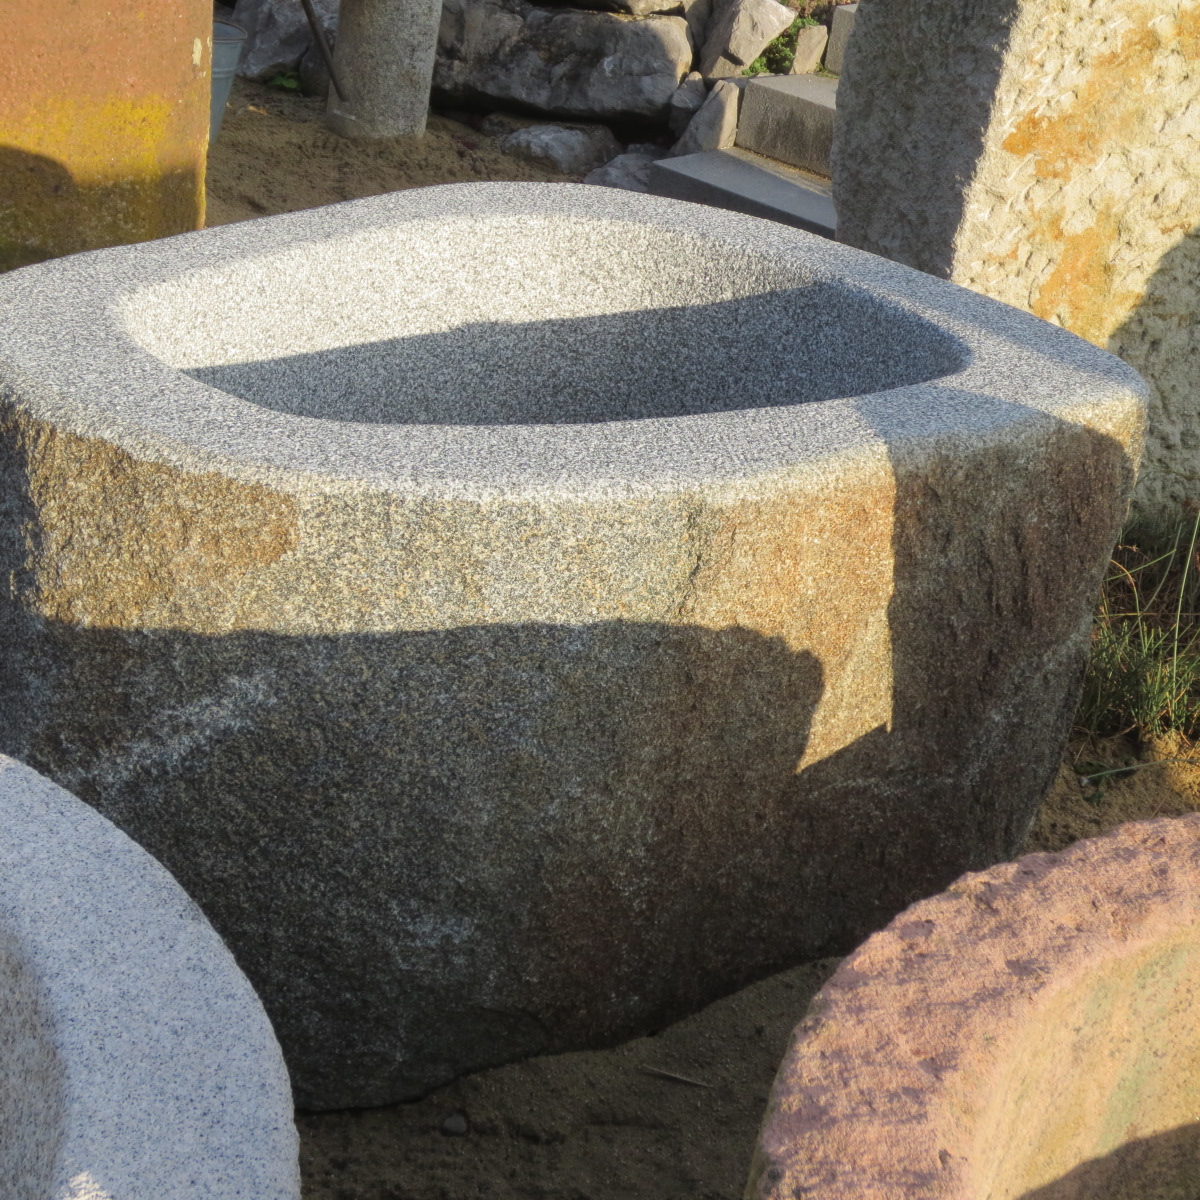 Gartenbrunnen Granit